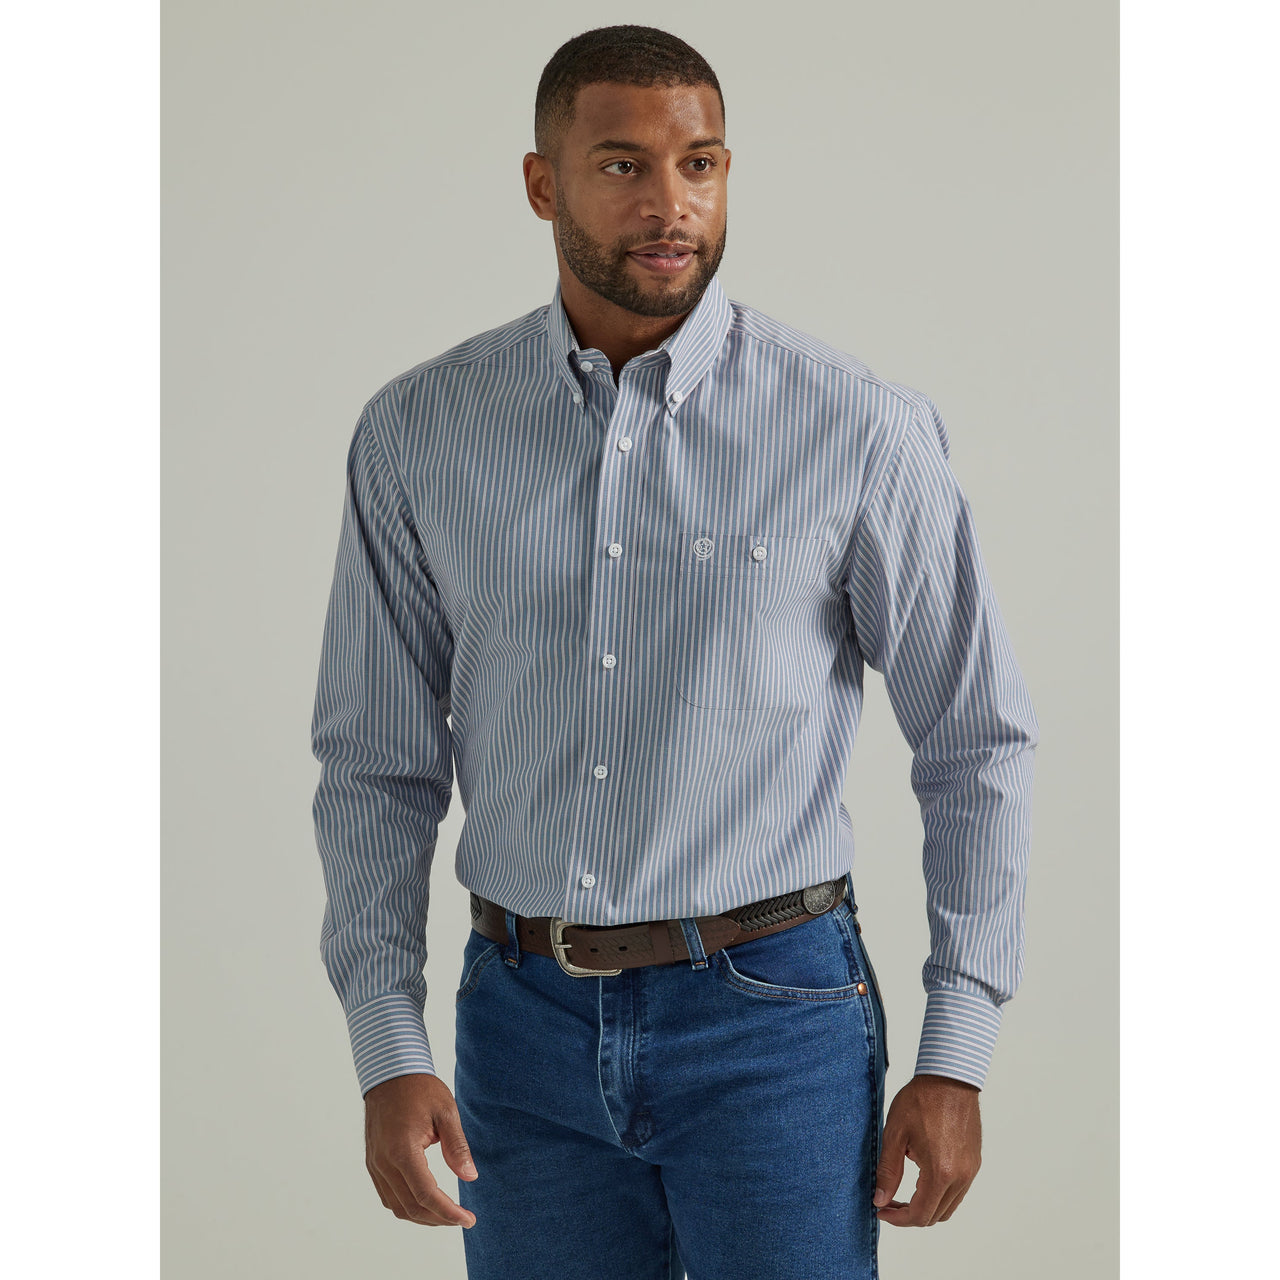 Wrangler Men's George Strait Long Sleeve Shirt - Navy